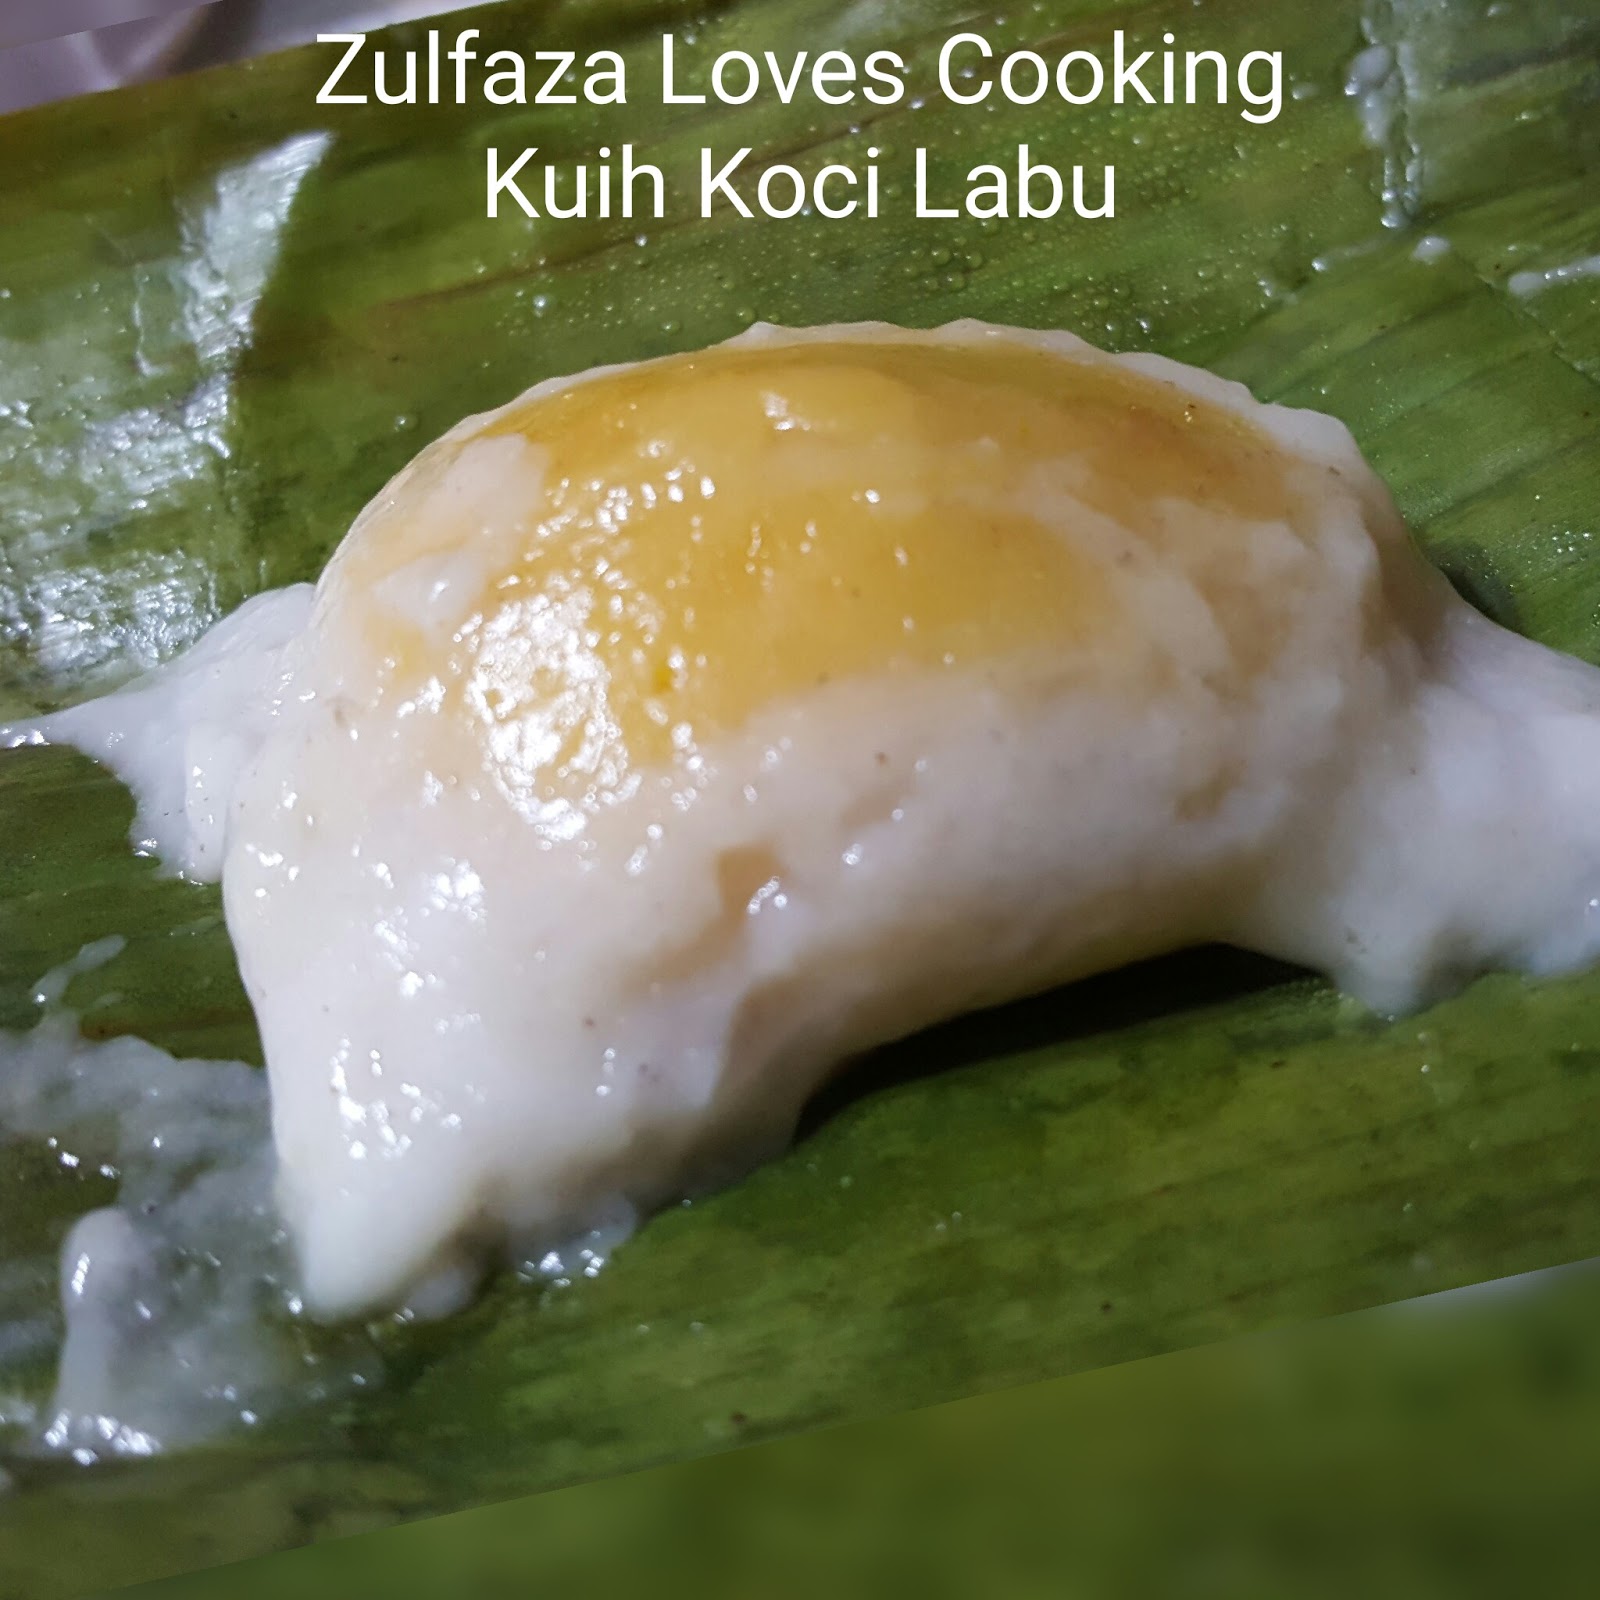 ZULFAZA LOVES COOKING: KUIH KOCI LABU